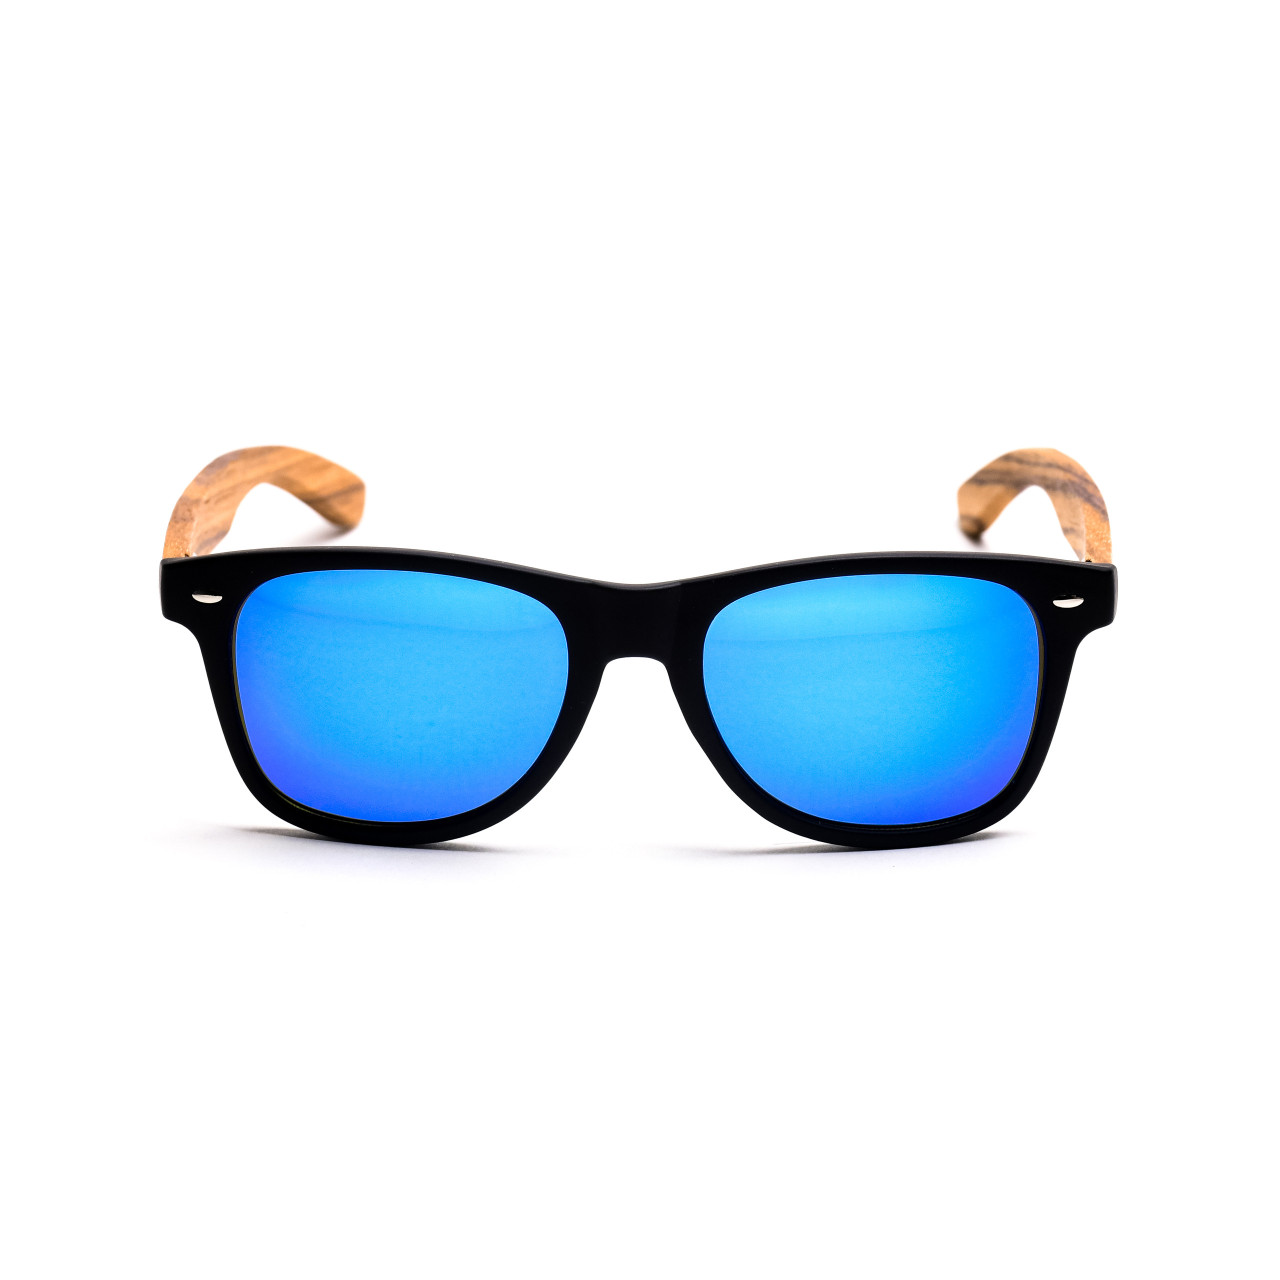 Brýle Classic – modré čočky + černé obroučky + zebra